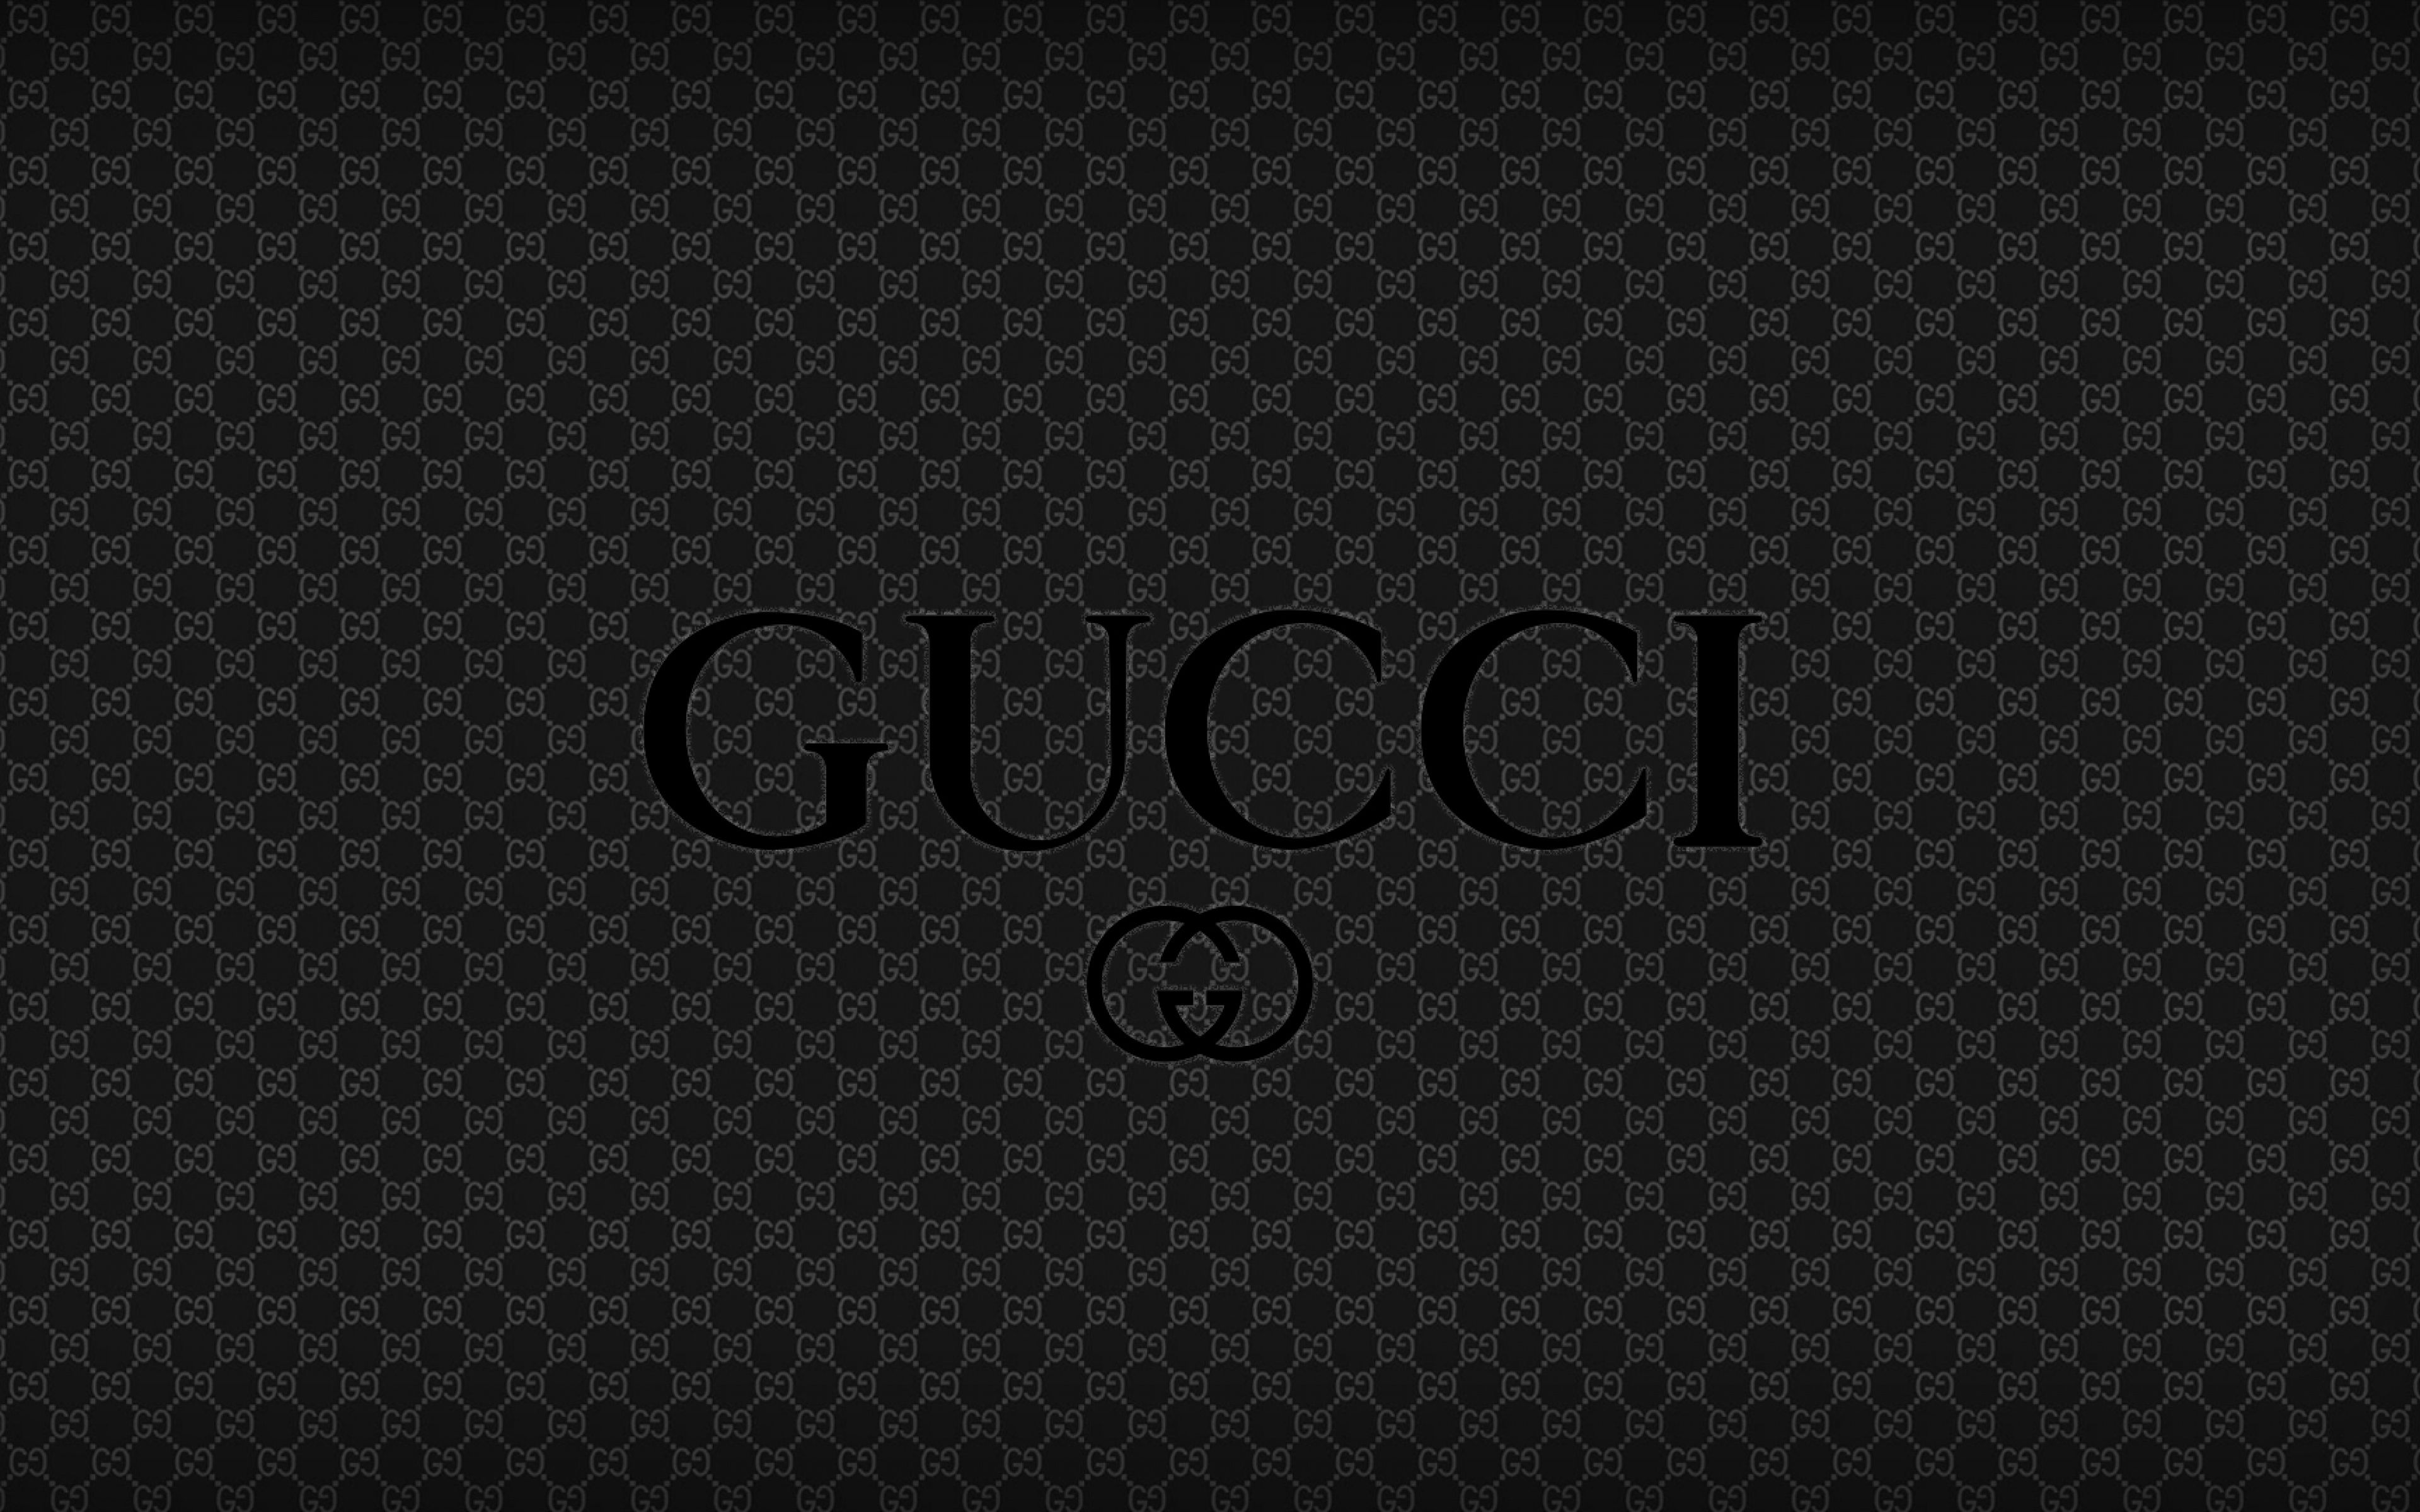 Fondos de pantalla de Gucci e imágenes de fondo - stmed.net